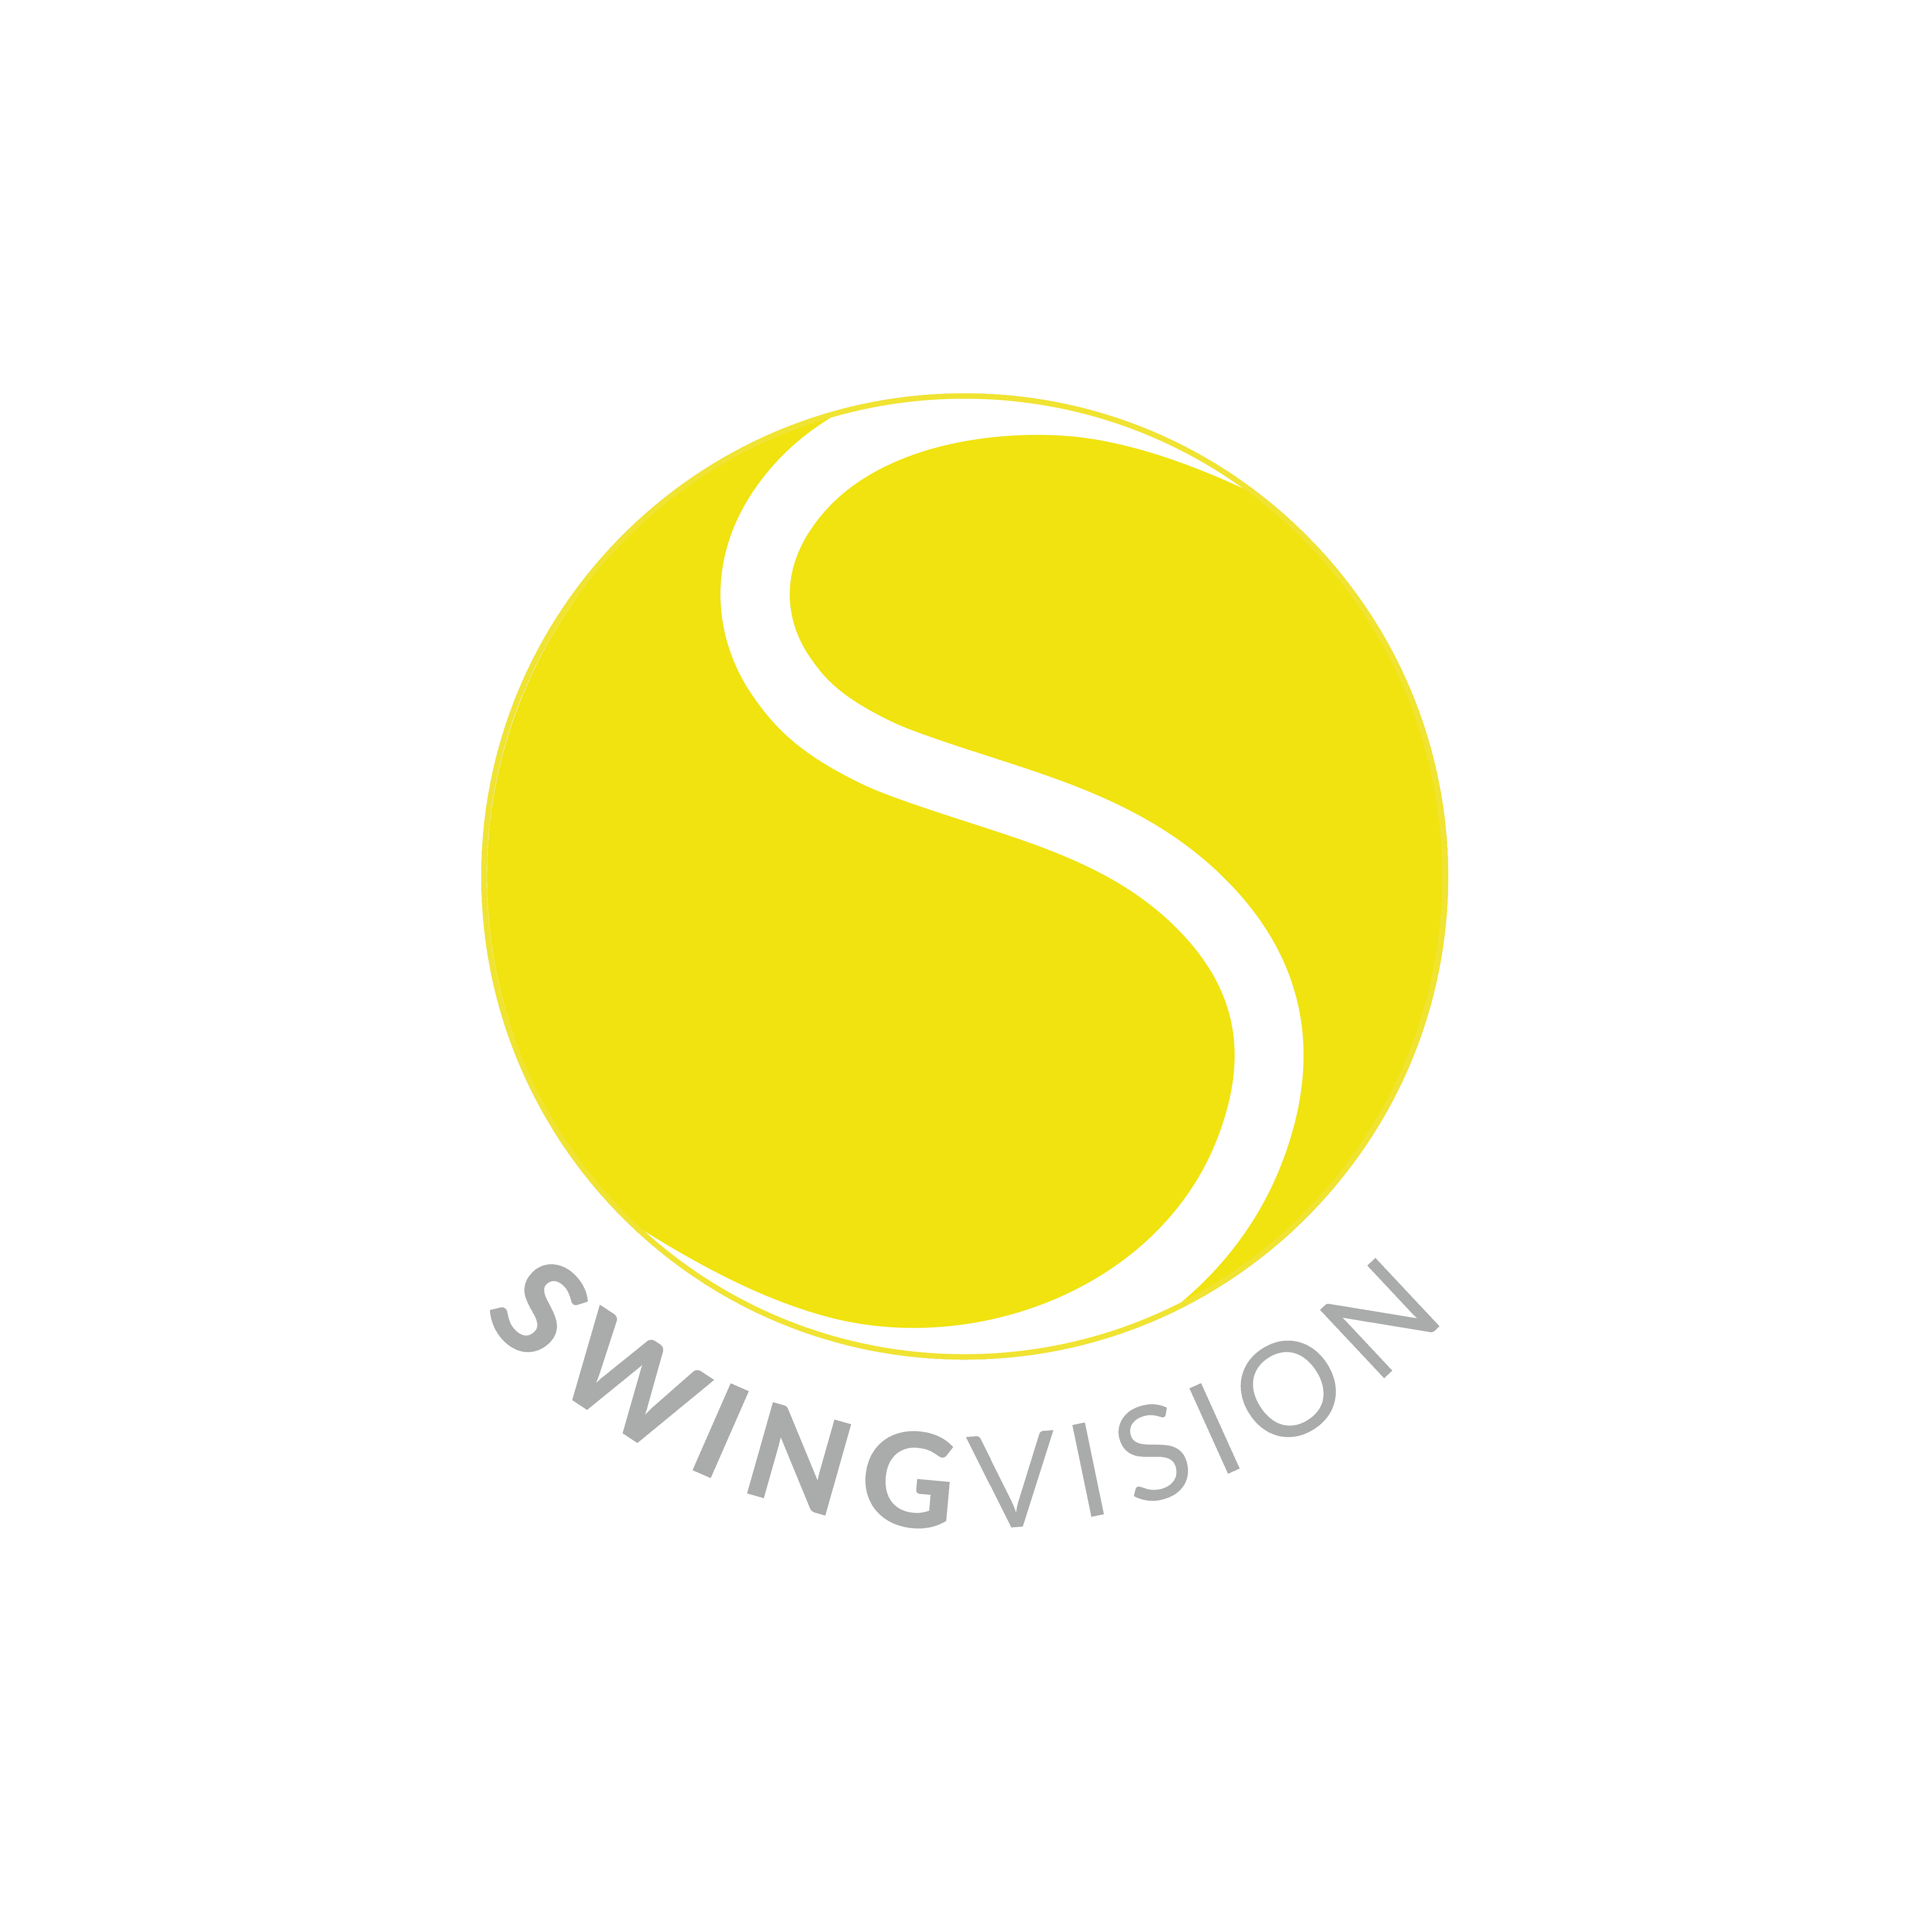 Swing Vision